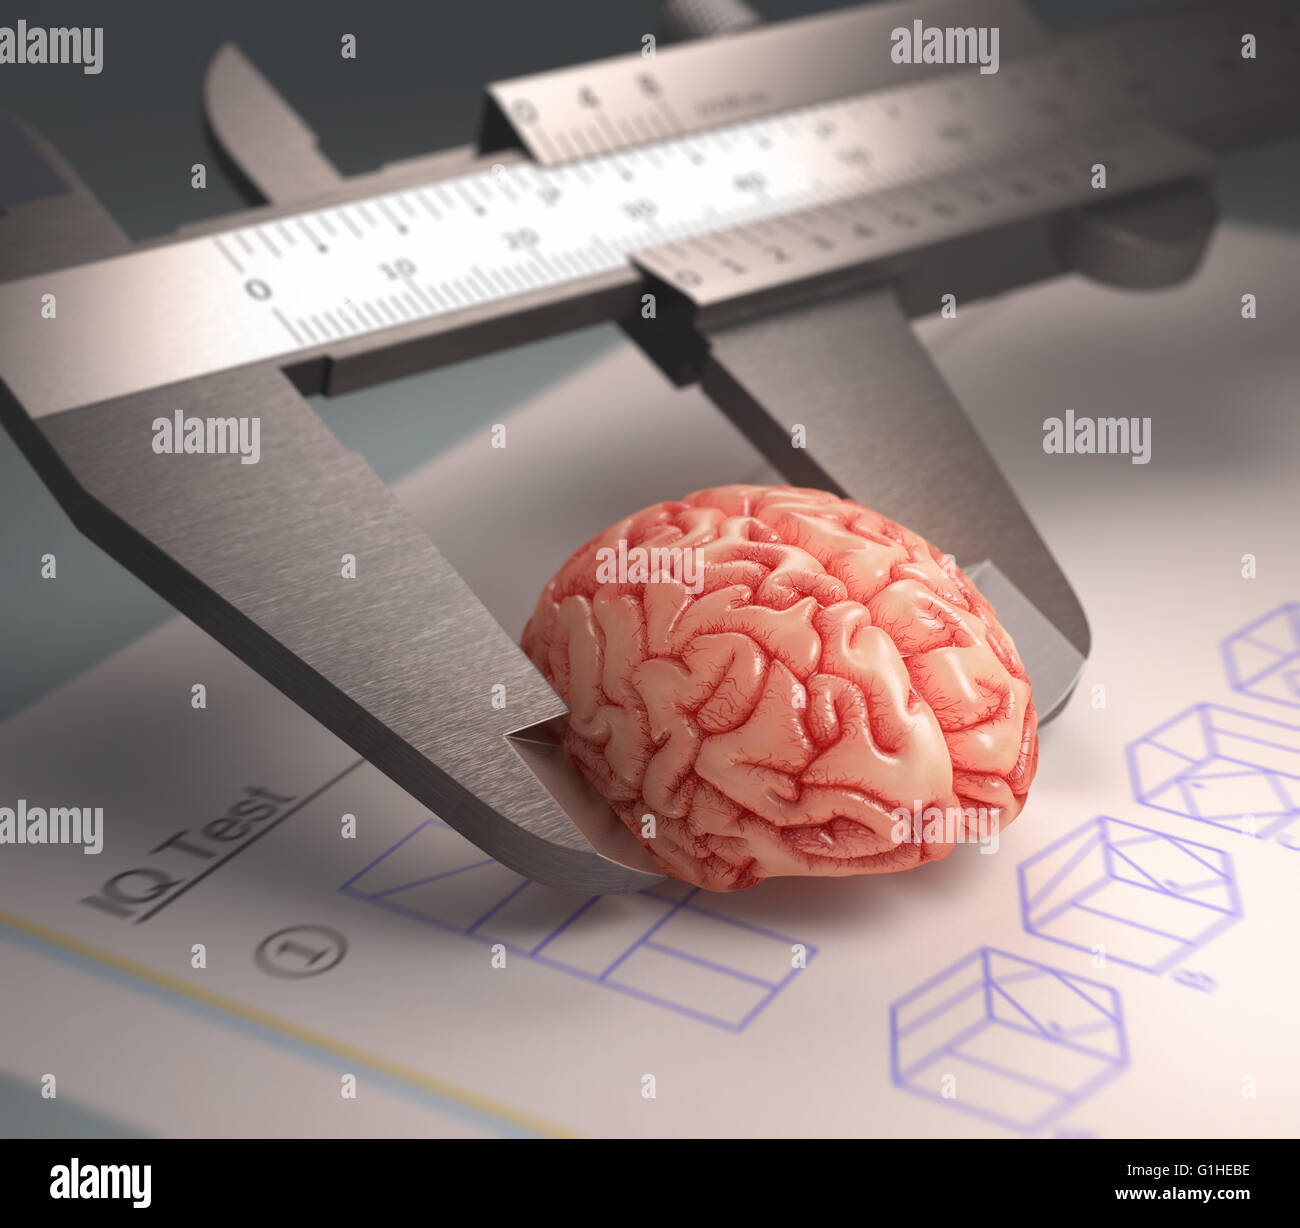 Règle mesurant l'étrier d'un cerveau humain. Sur le tableau, un test de QI dans un concept de l'intelligence humaine. Banque D'Images